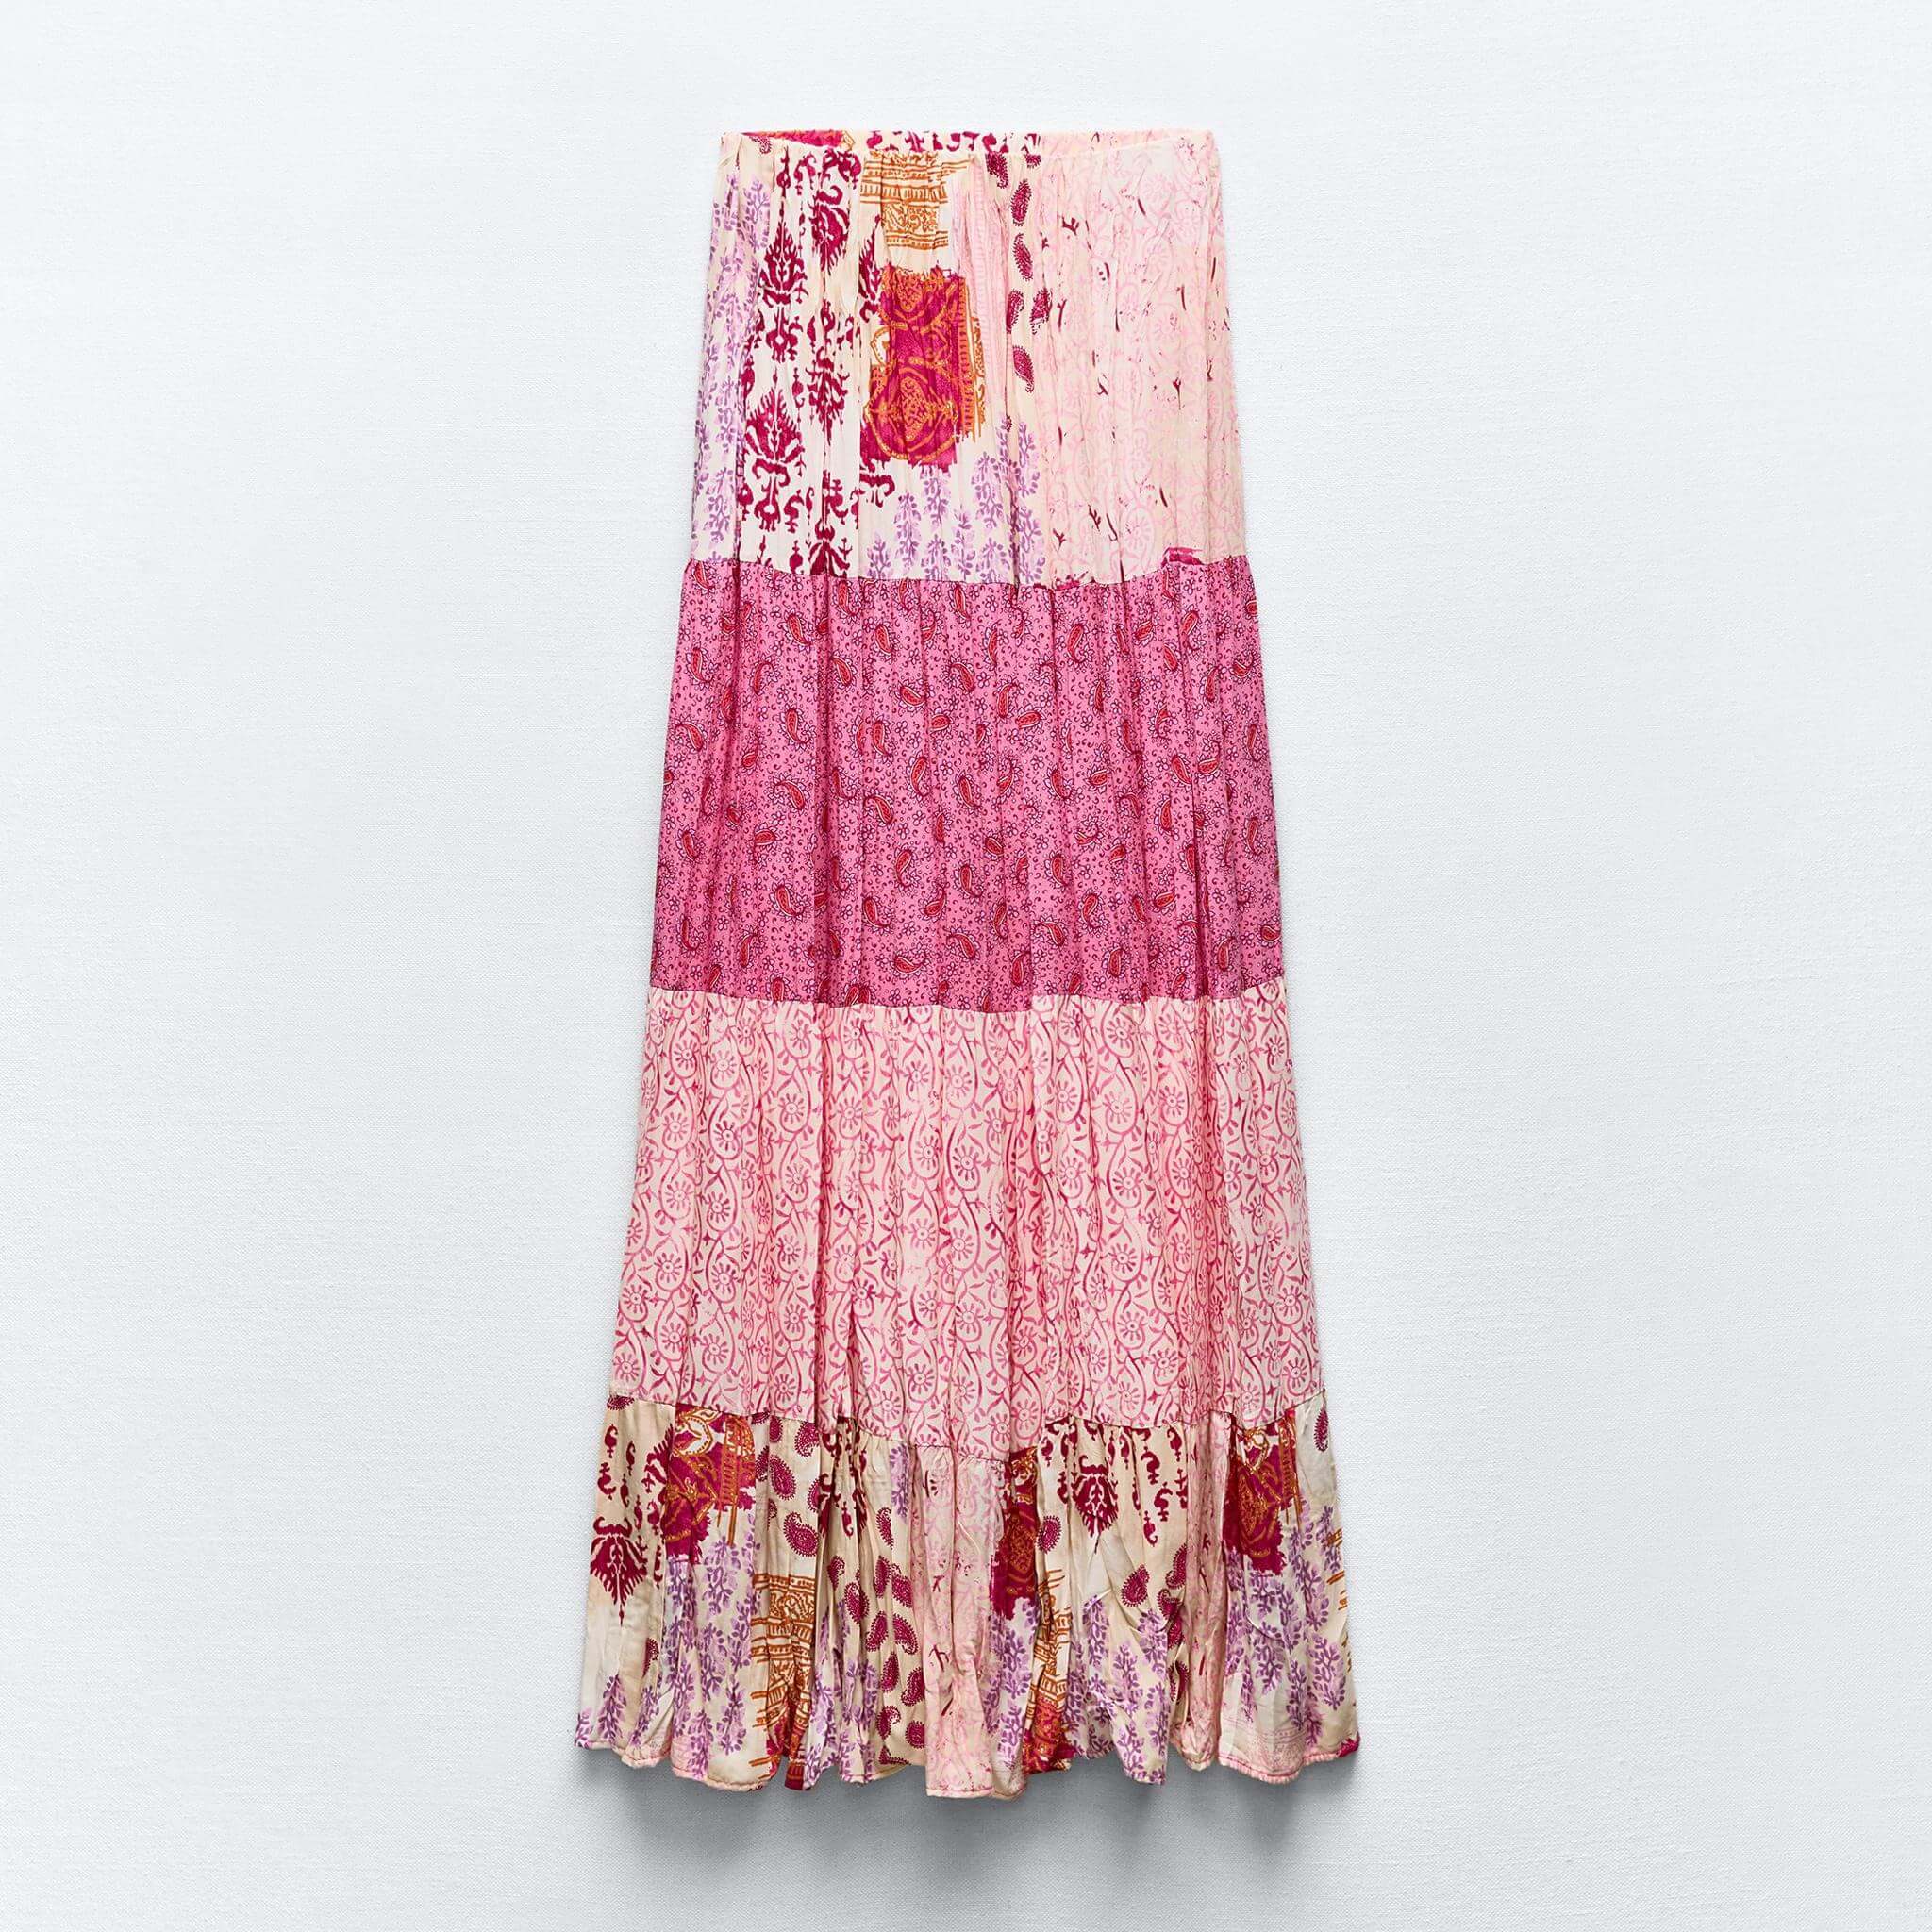 Юбка Zara Long Patchwork Print, мультиколор юбка длинная с принтом m красный